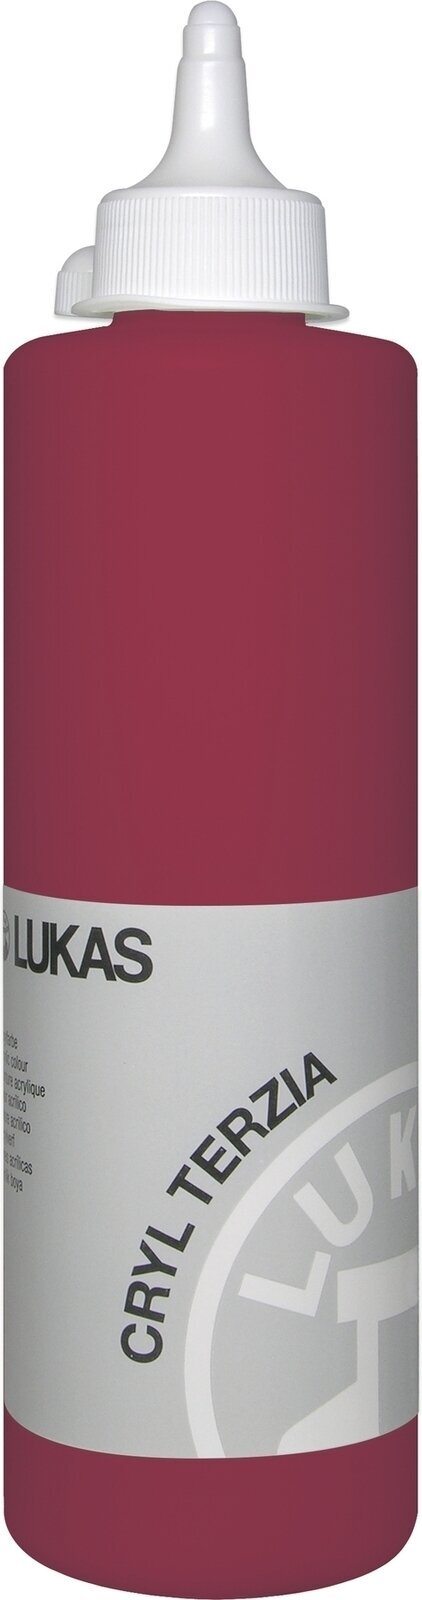 Akrylová barva Lukas Cryl Terzia Akrylová barva 500 ml Alizarin Crimson